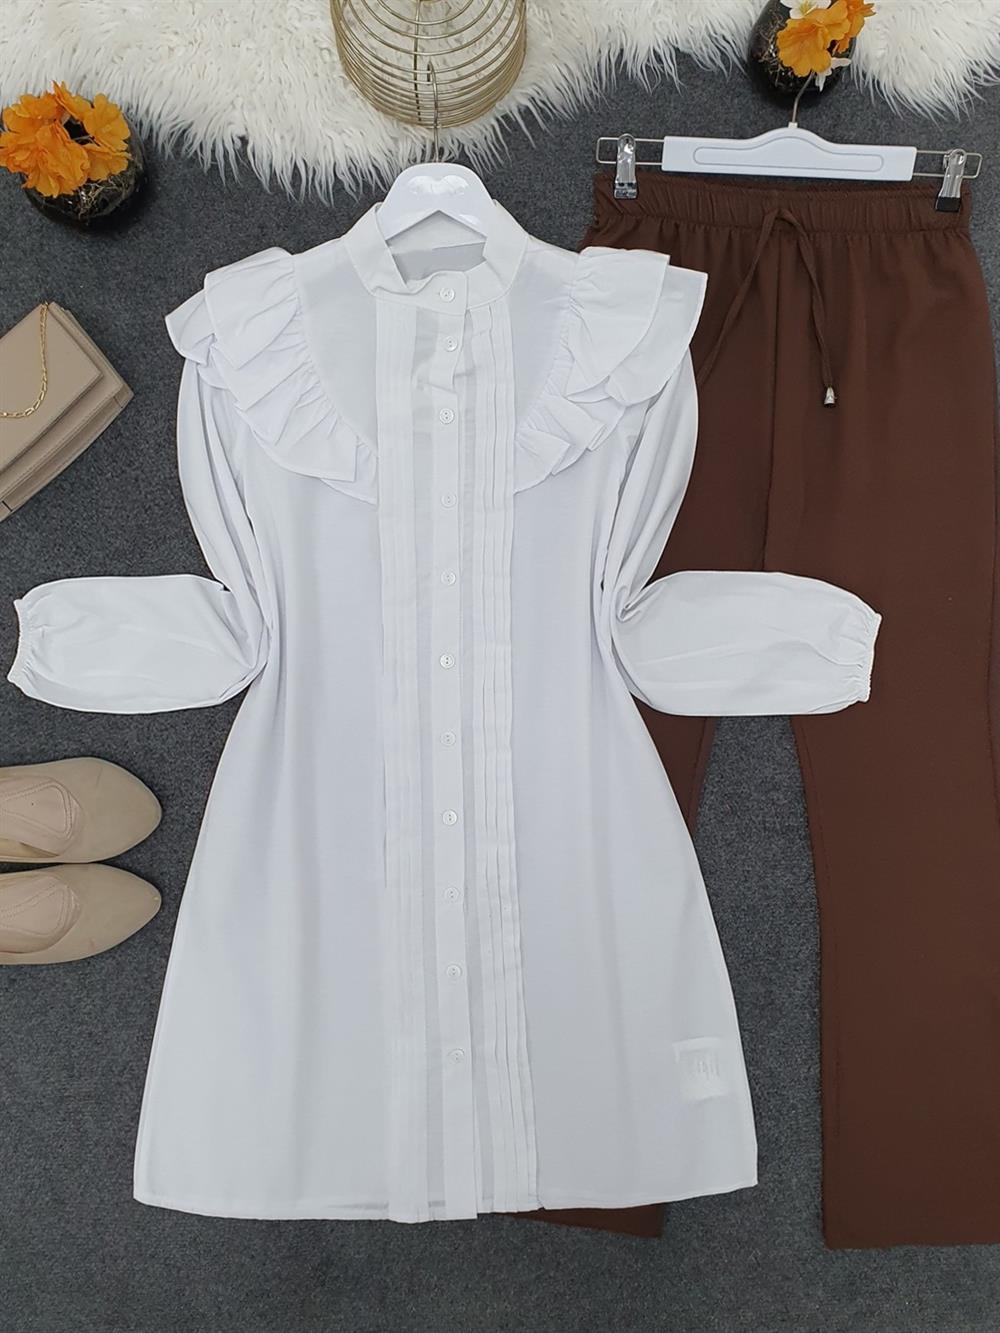 Omuzdan Fırfırlı Önü Nervürlü Düğmeli Tunik -Beyaz - 338-486-R02 | PUANE  Marka Fırfırlı Tunik Modelleri | Kadın Tesettür Giyim - KaliteMall.com